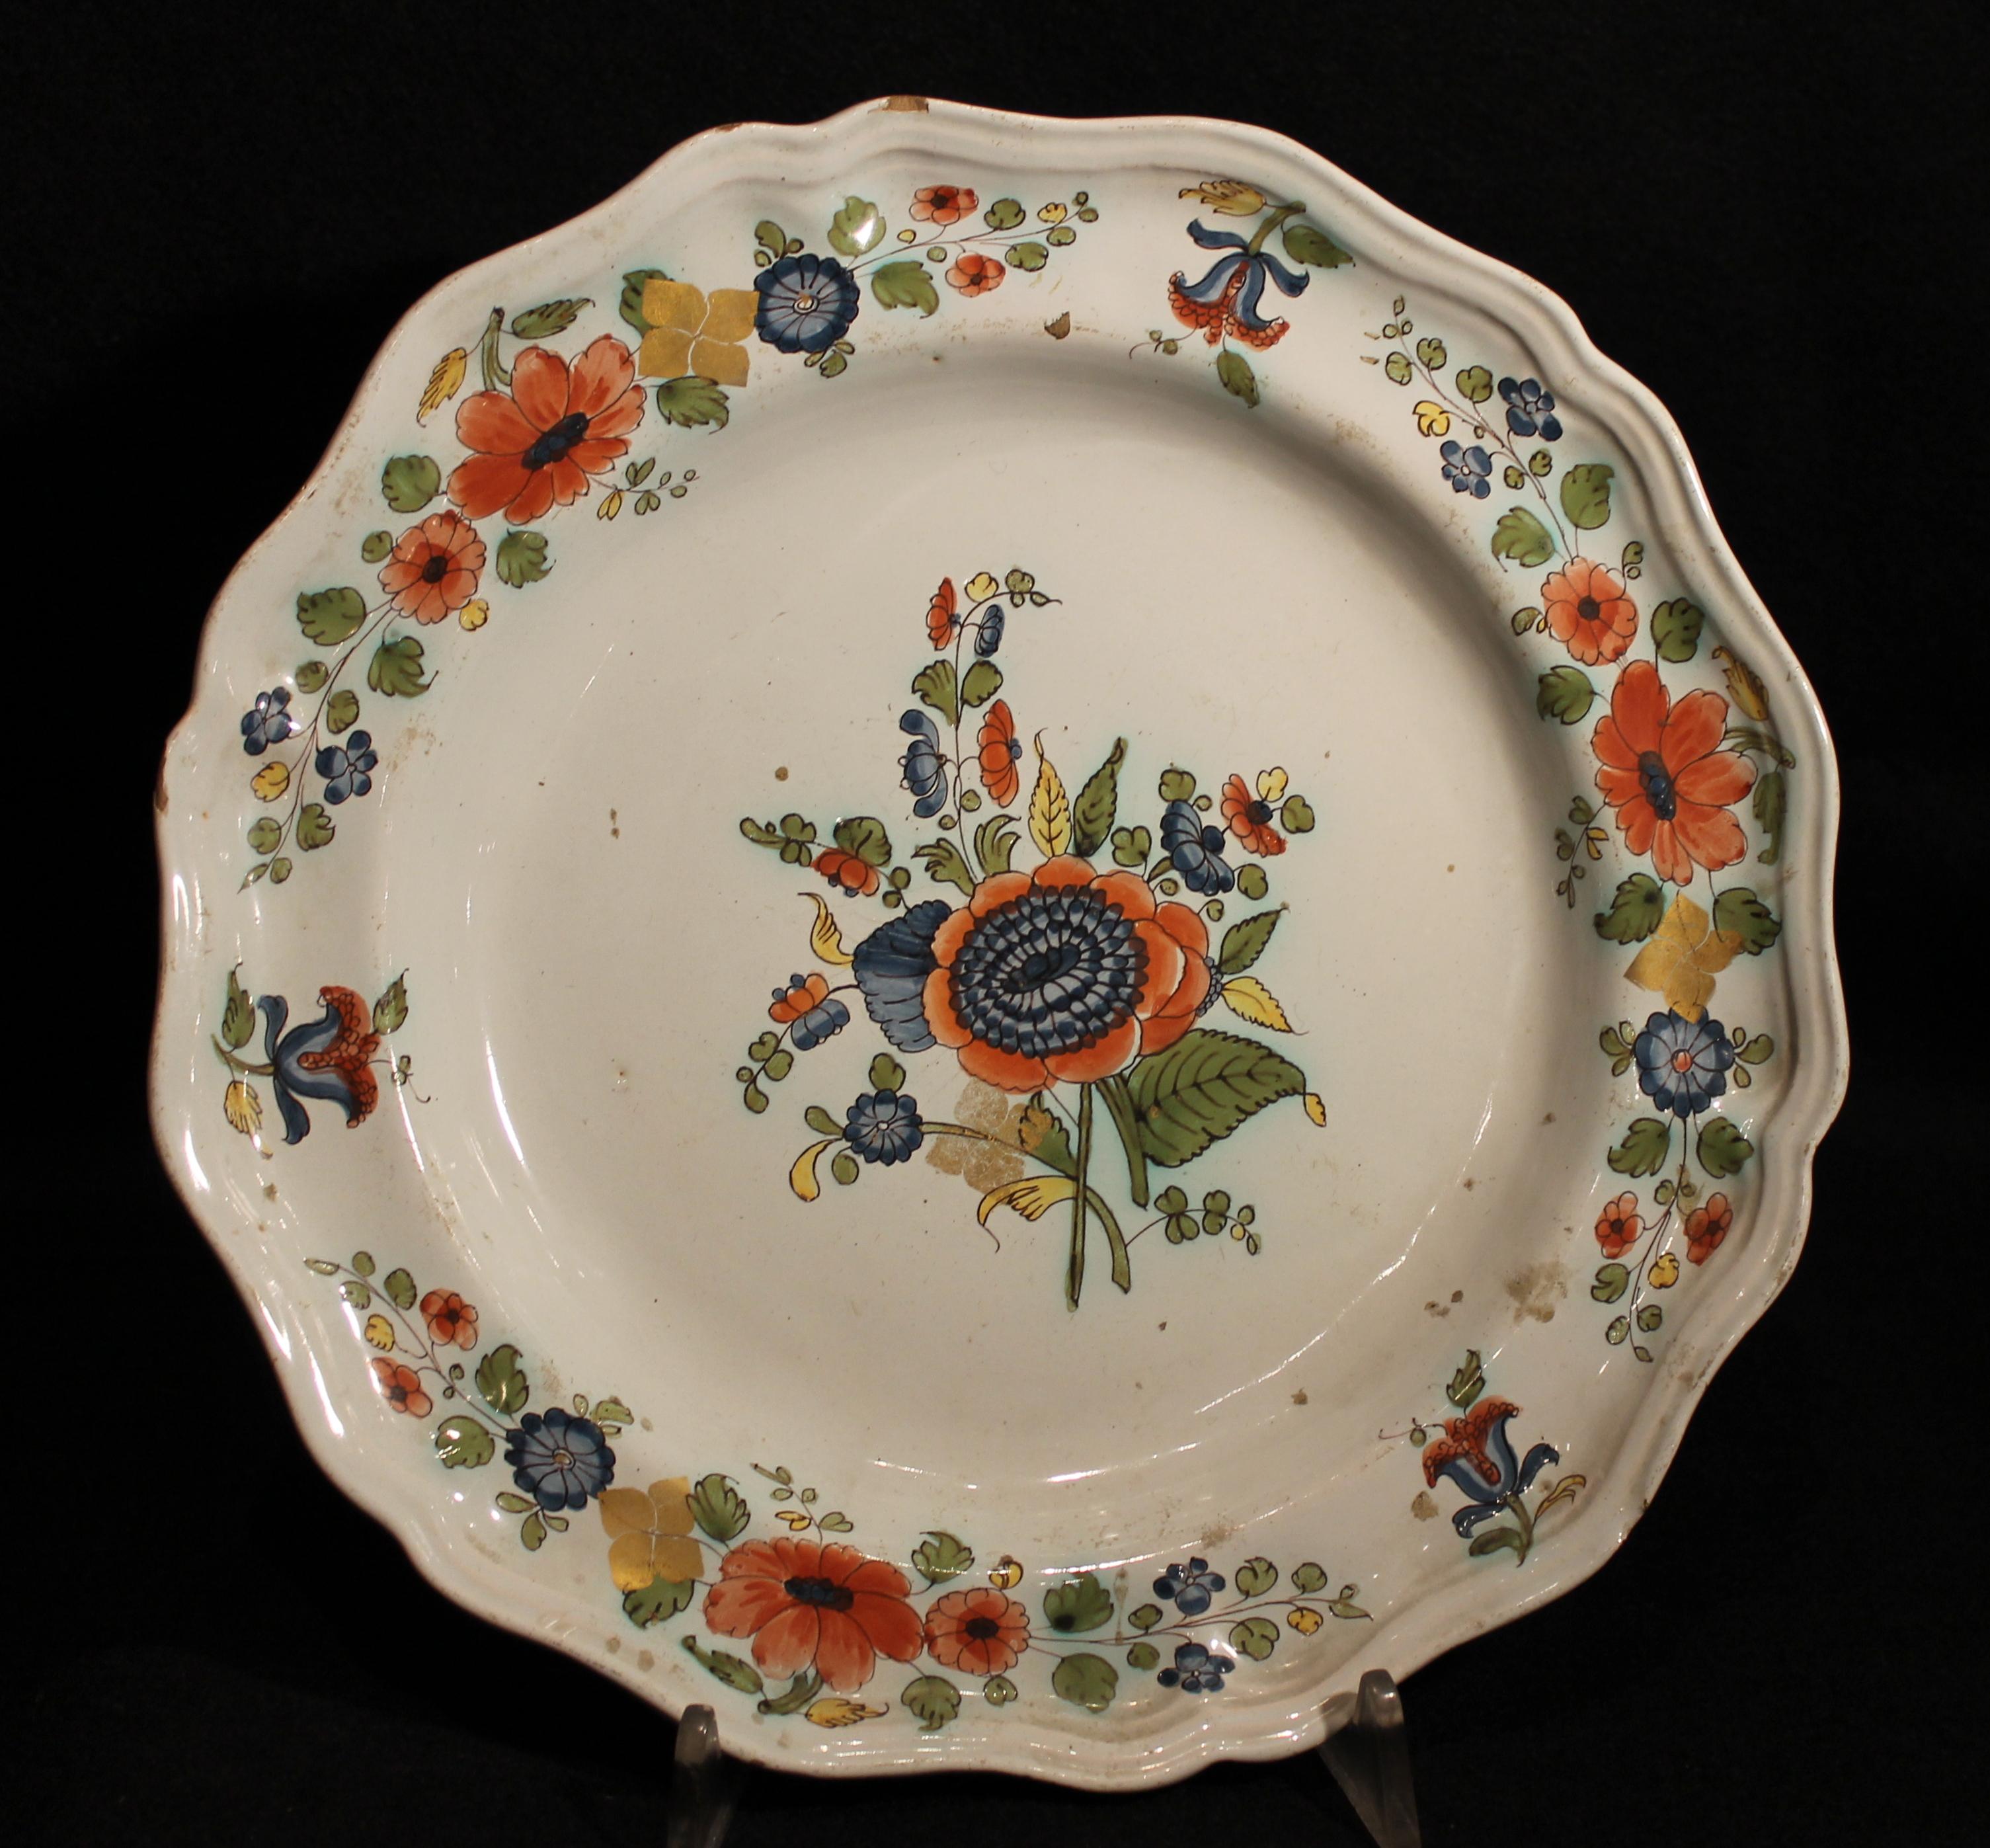 18th century dinnerware